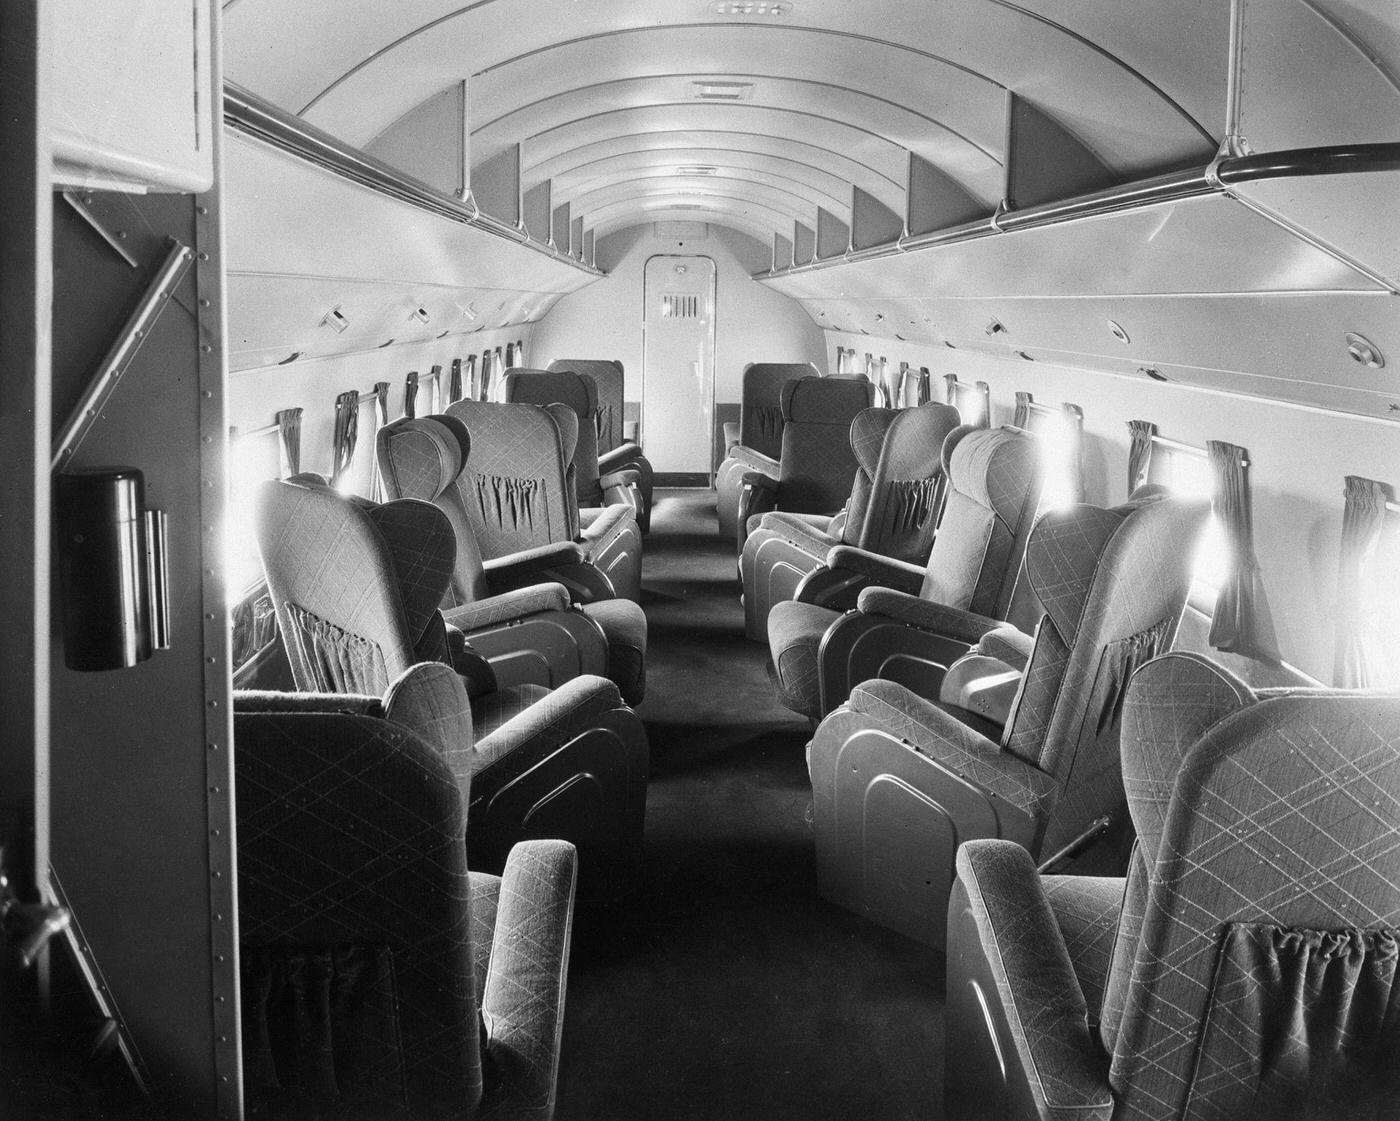 Inside Douglas Passenger Plane, October 5, 1938